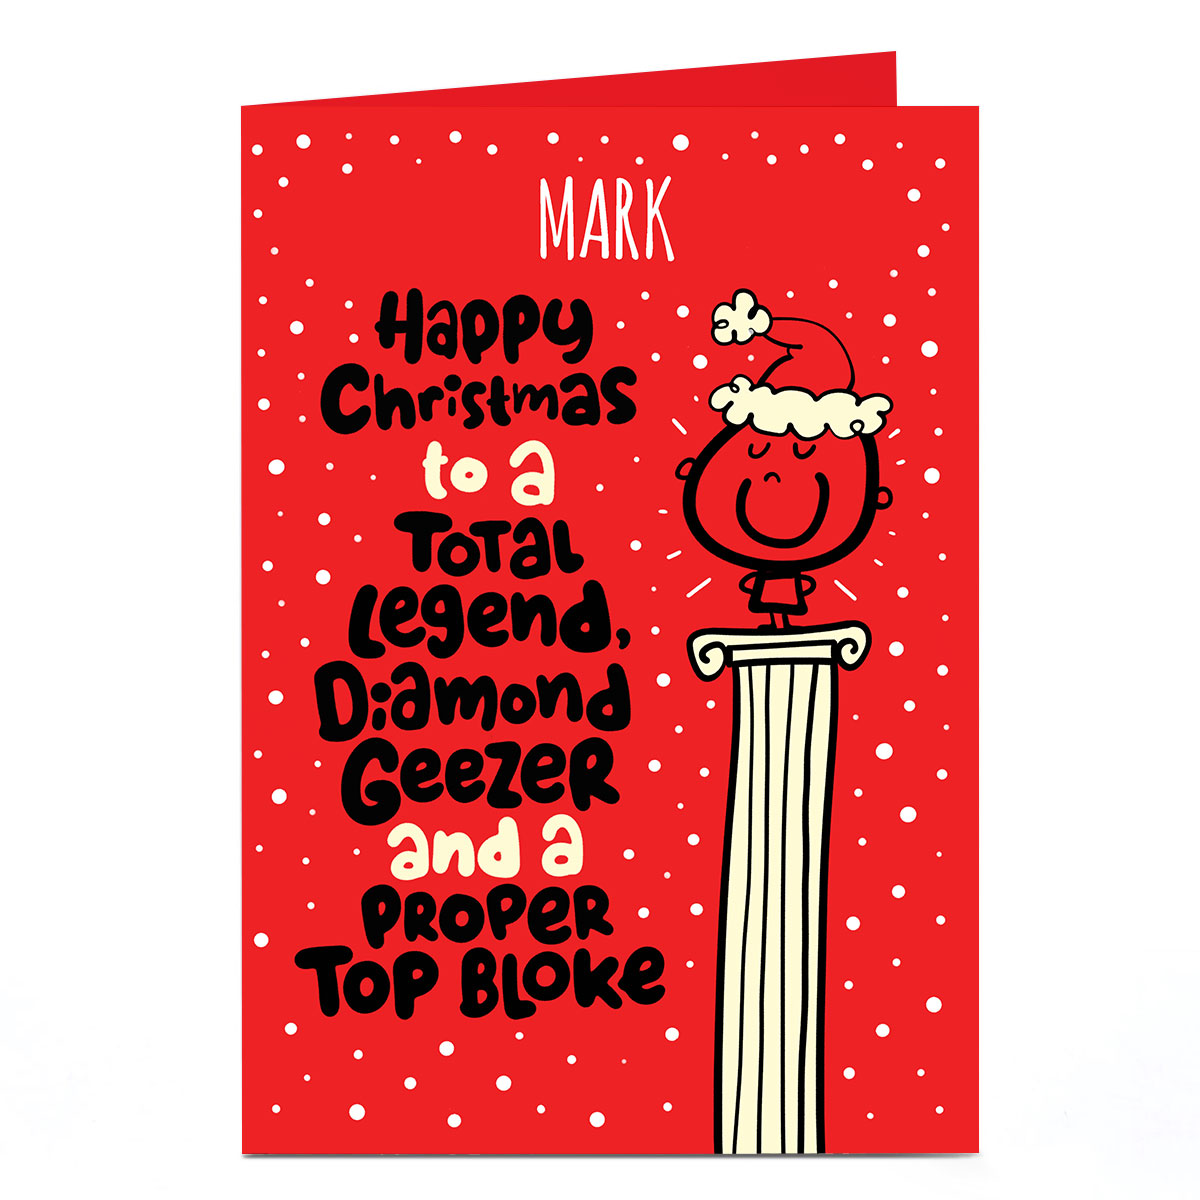 Personalised Fruitloops Christmas Card - Proper Top Bloke